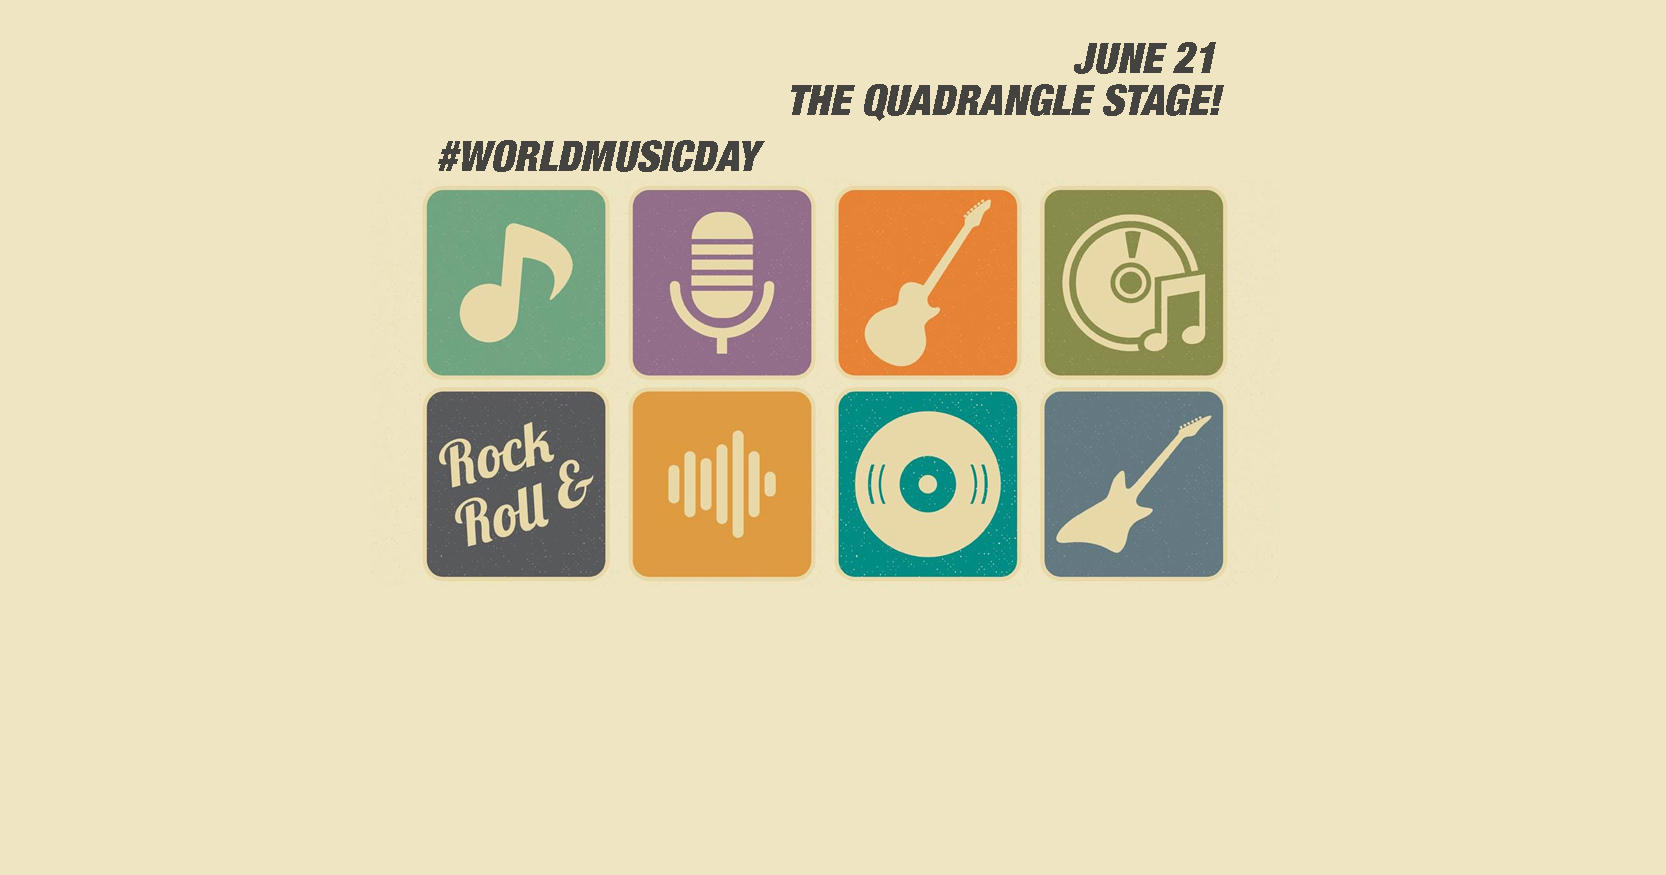 BandAge -Celebrating World Music Day 2016 - The Quadrangle Stage -